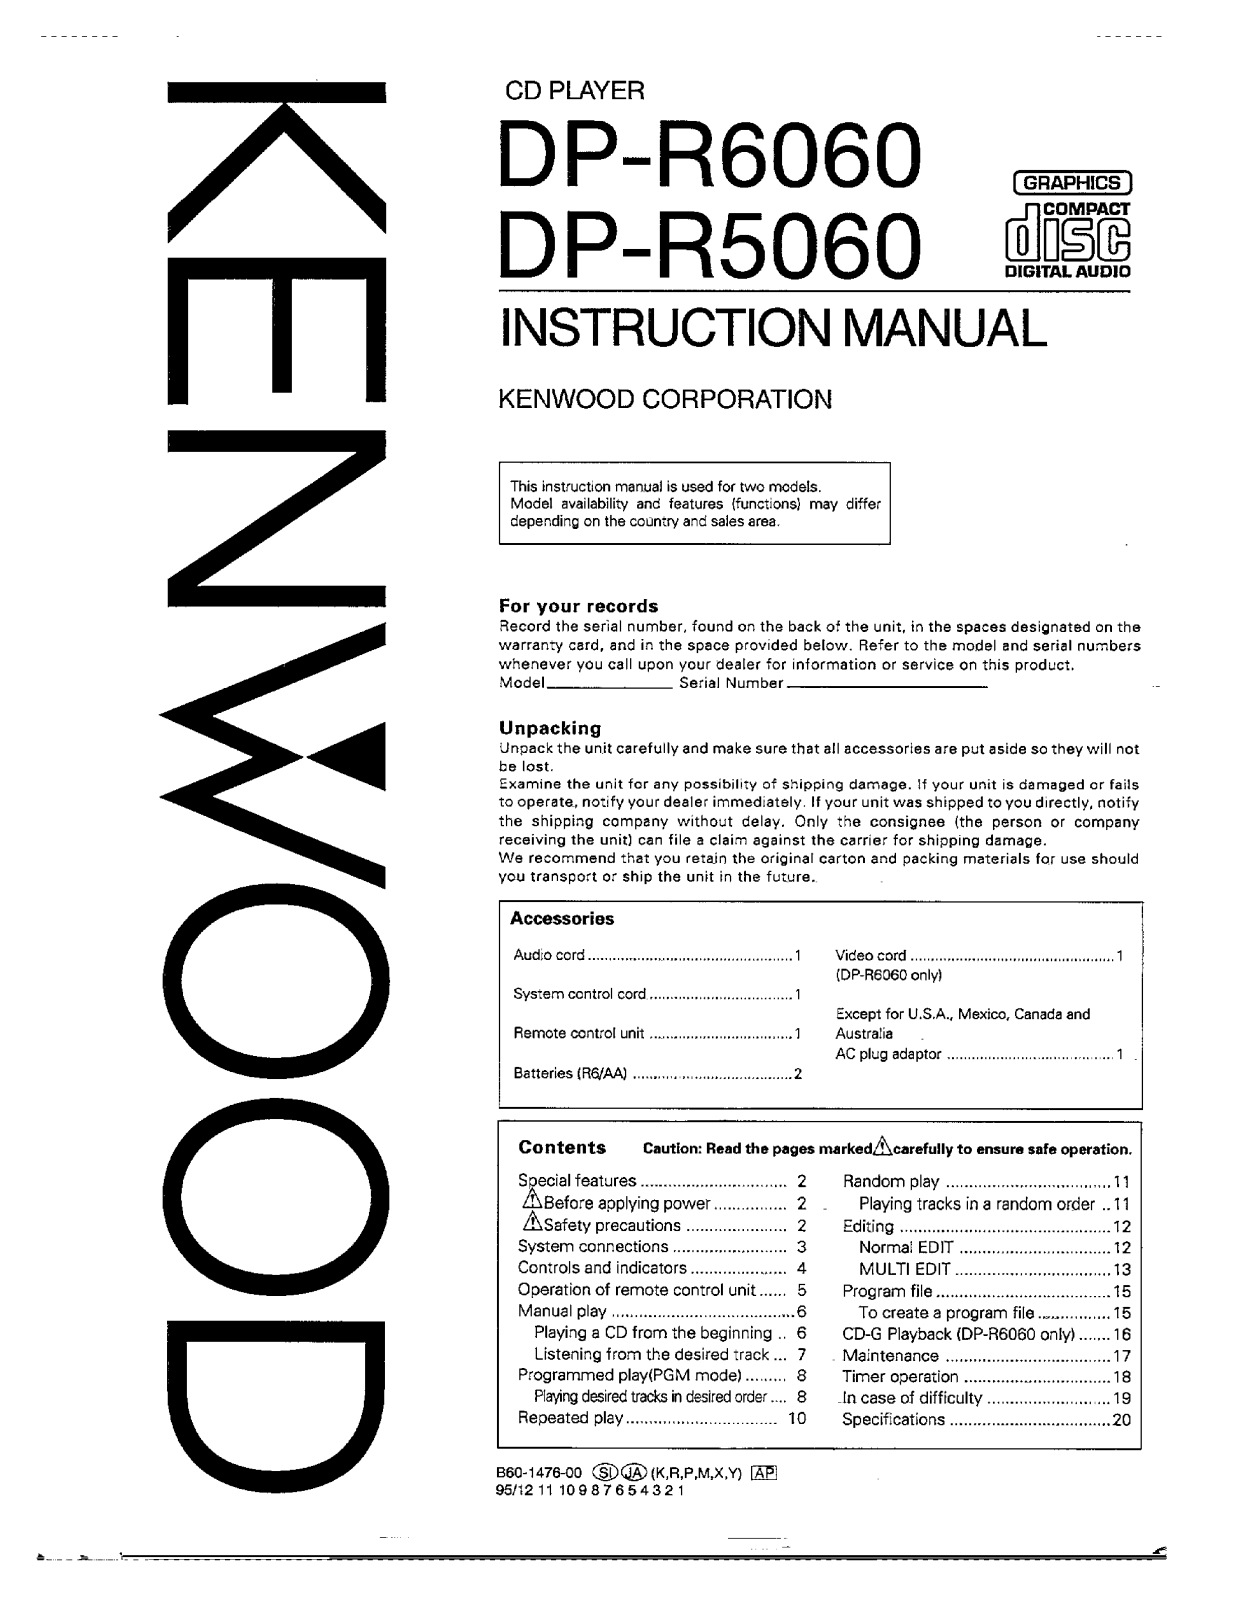 Kenwood DP-R6060, DP-R5060 Owner's Manual